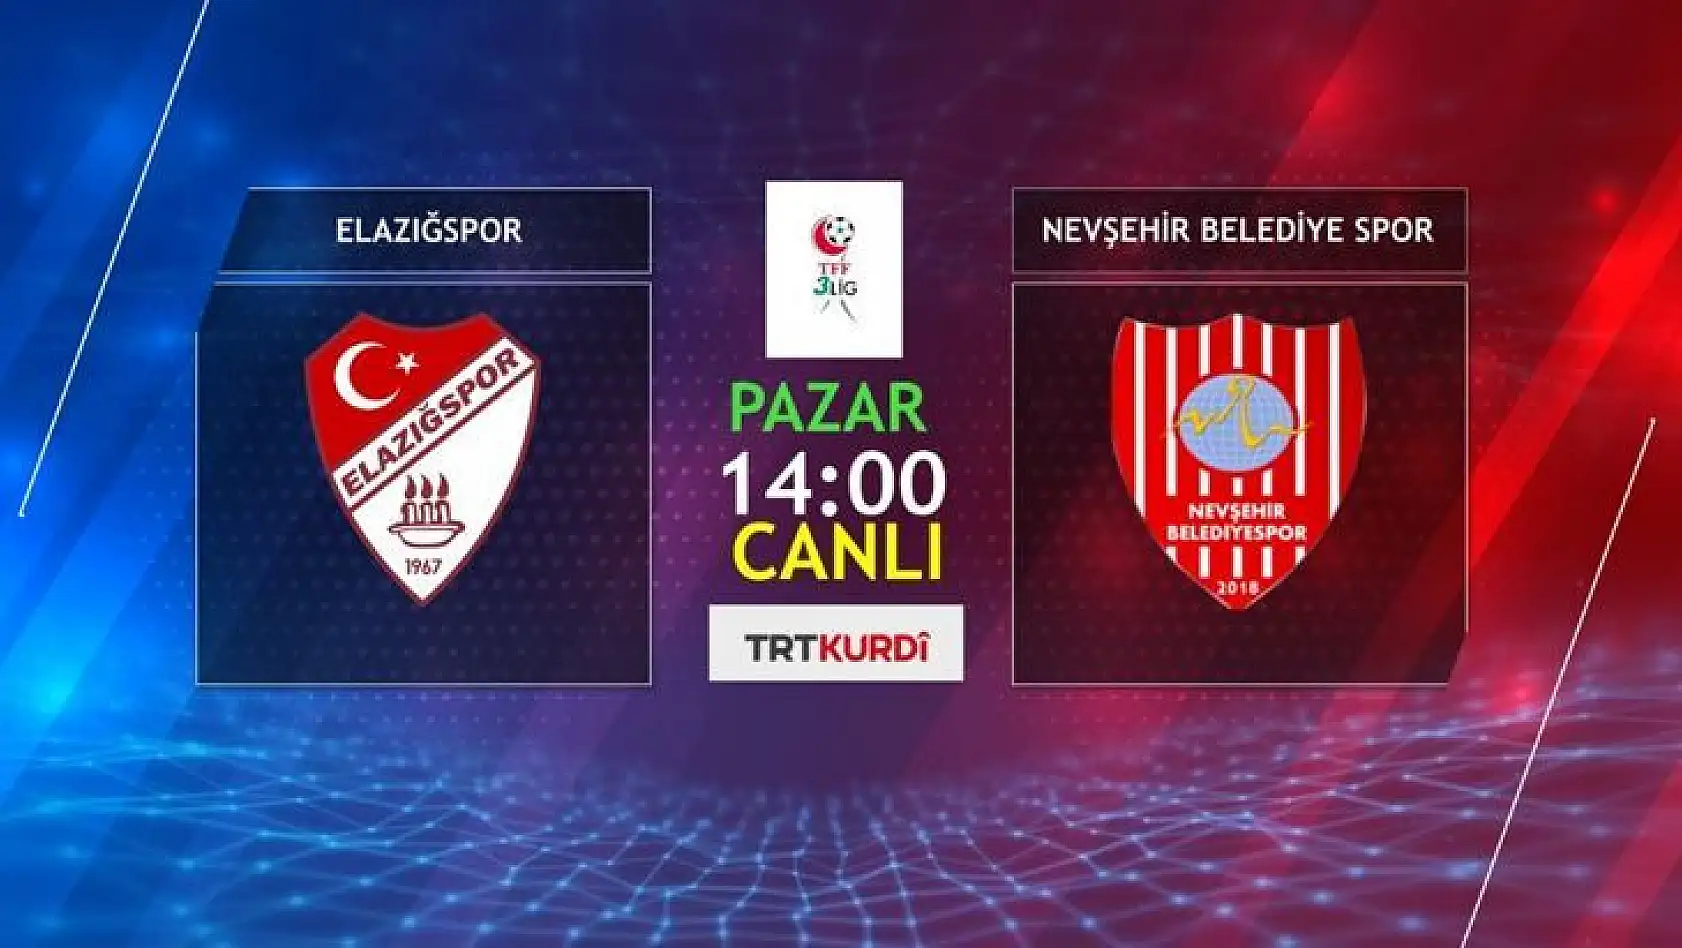 Elazığspor'un maçı TRT Kürdi'de!